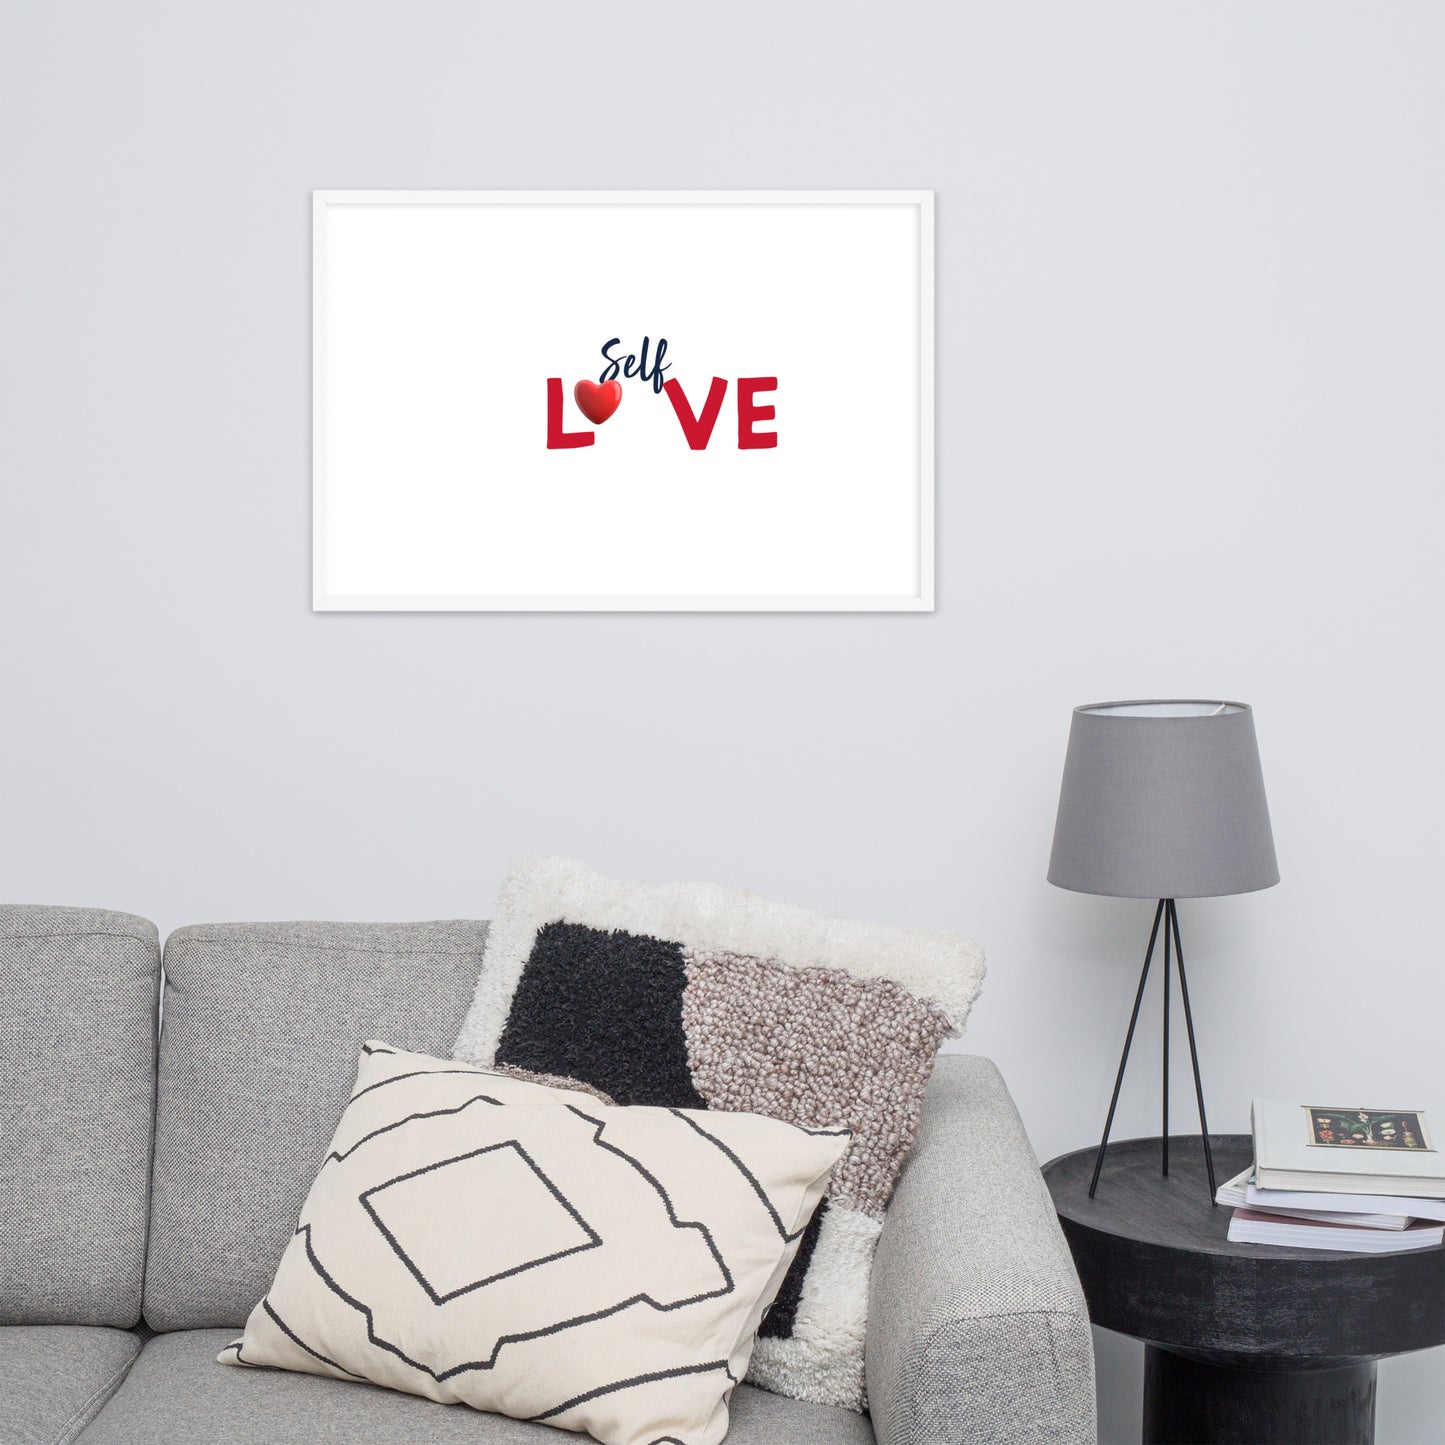 Framed Poster (Self Love - Love Framed Poster Horizontal Model 009)